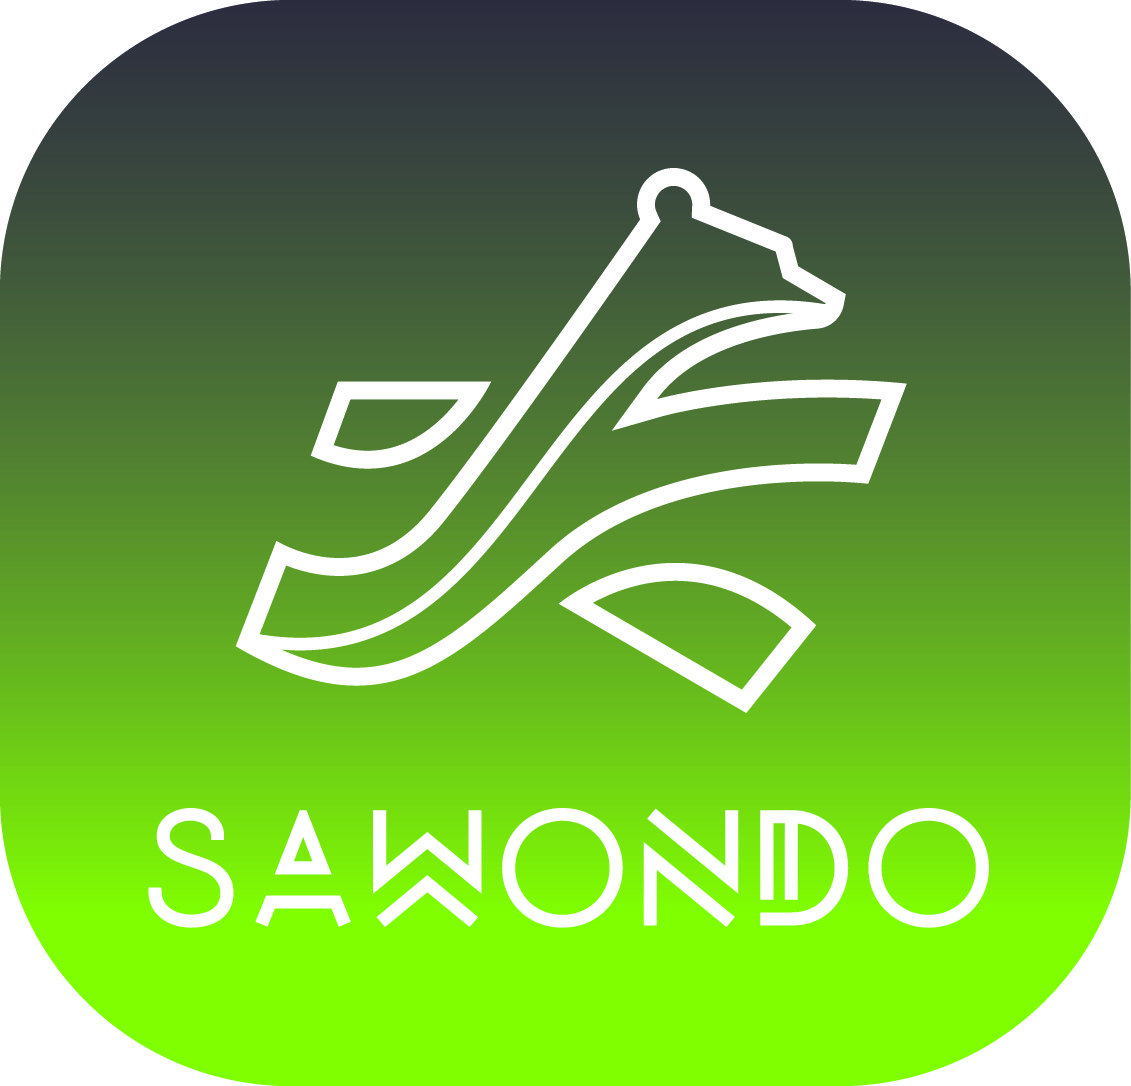 Un nouveau logo pour Sawondo